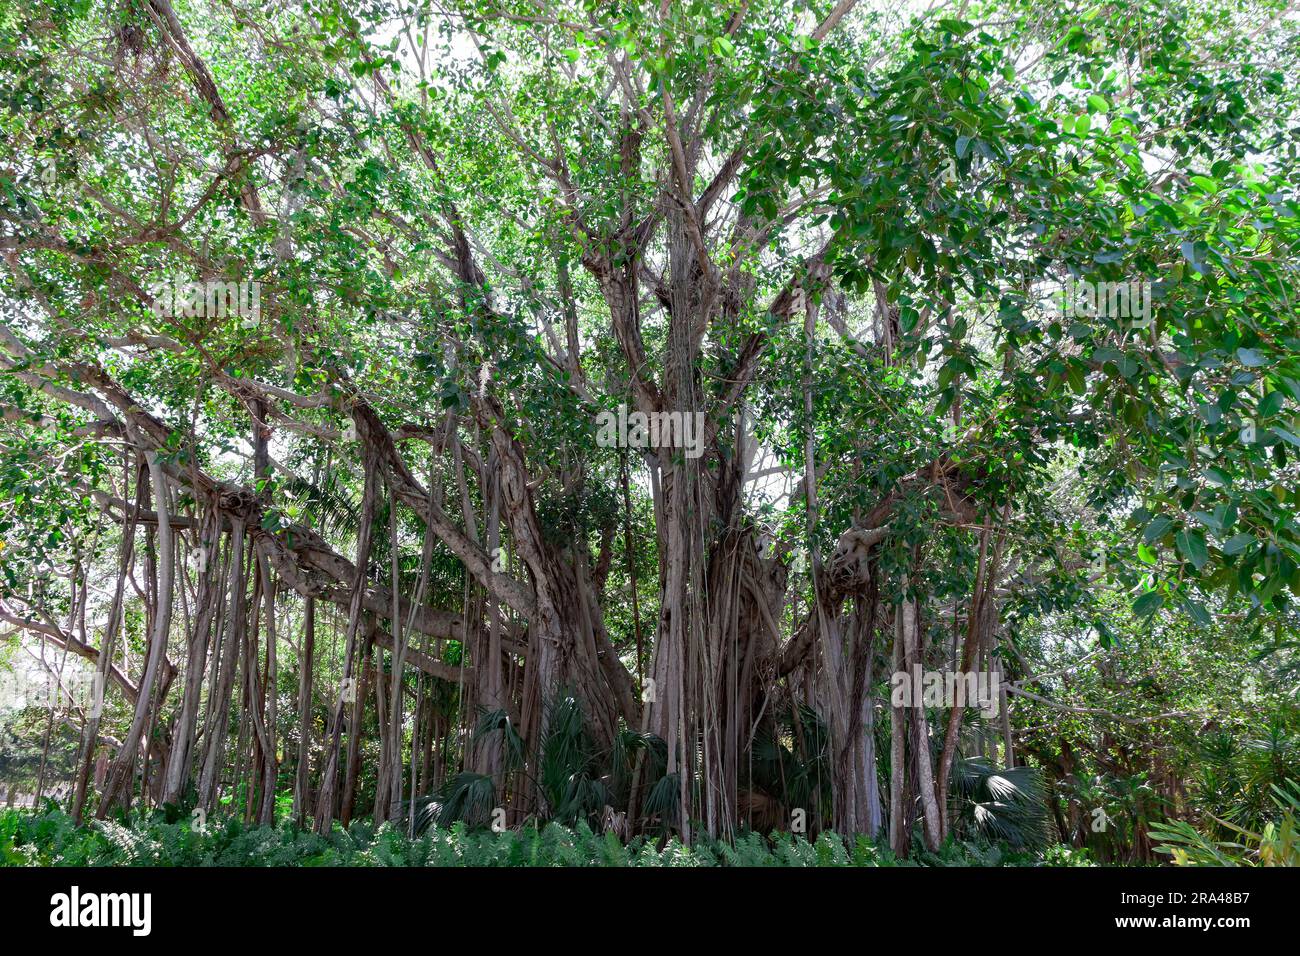 Vieux arbres Banyan poussant à Sarasota, Floride, États-Unis. Banque D'Images